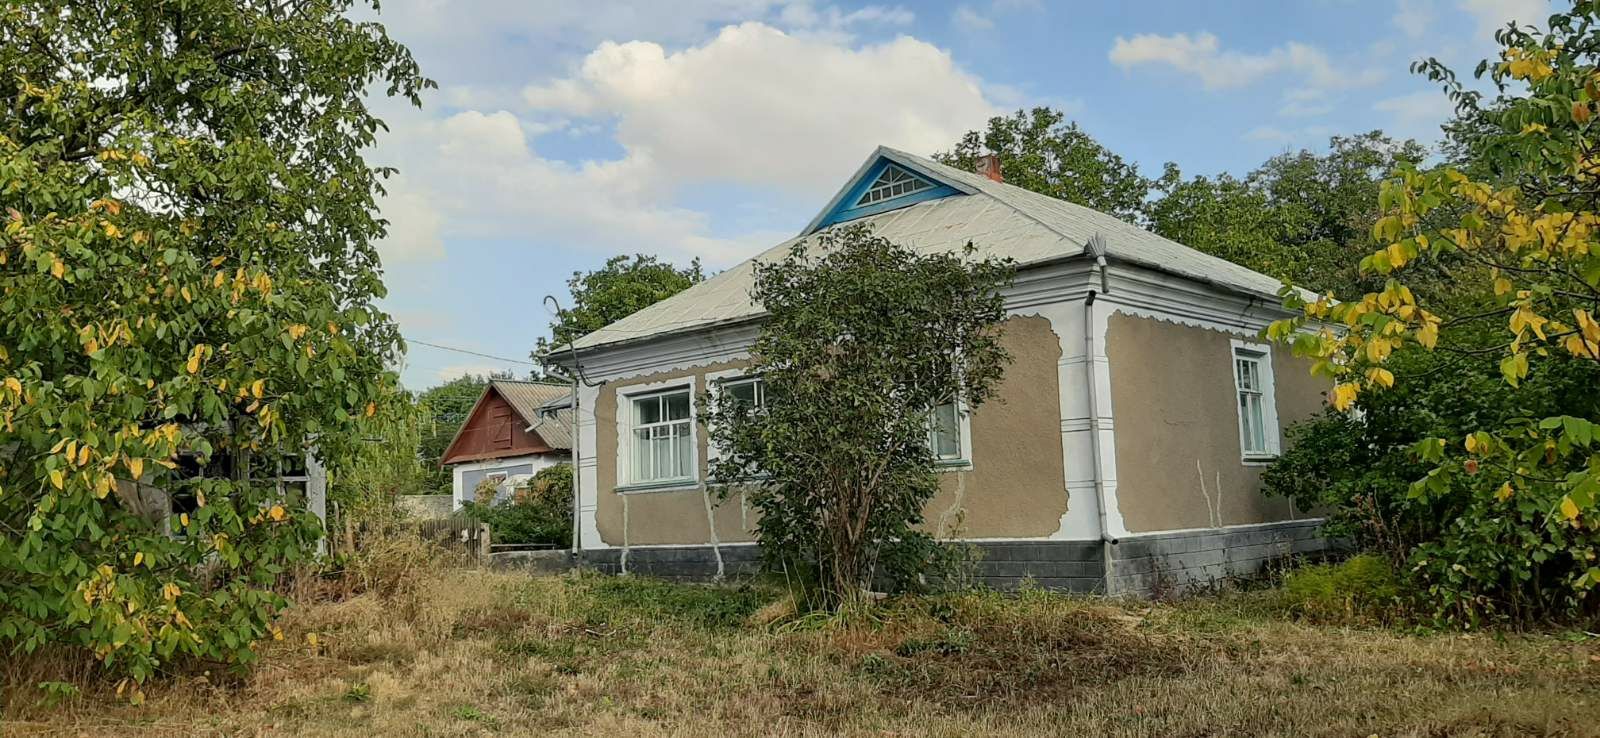 Продам дом с участком 60 соток в с.Руданское (14 км до г.Шаргород)